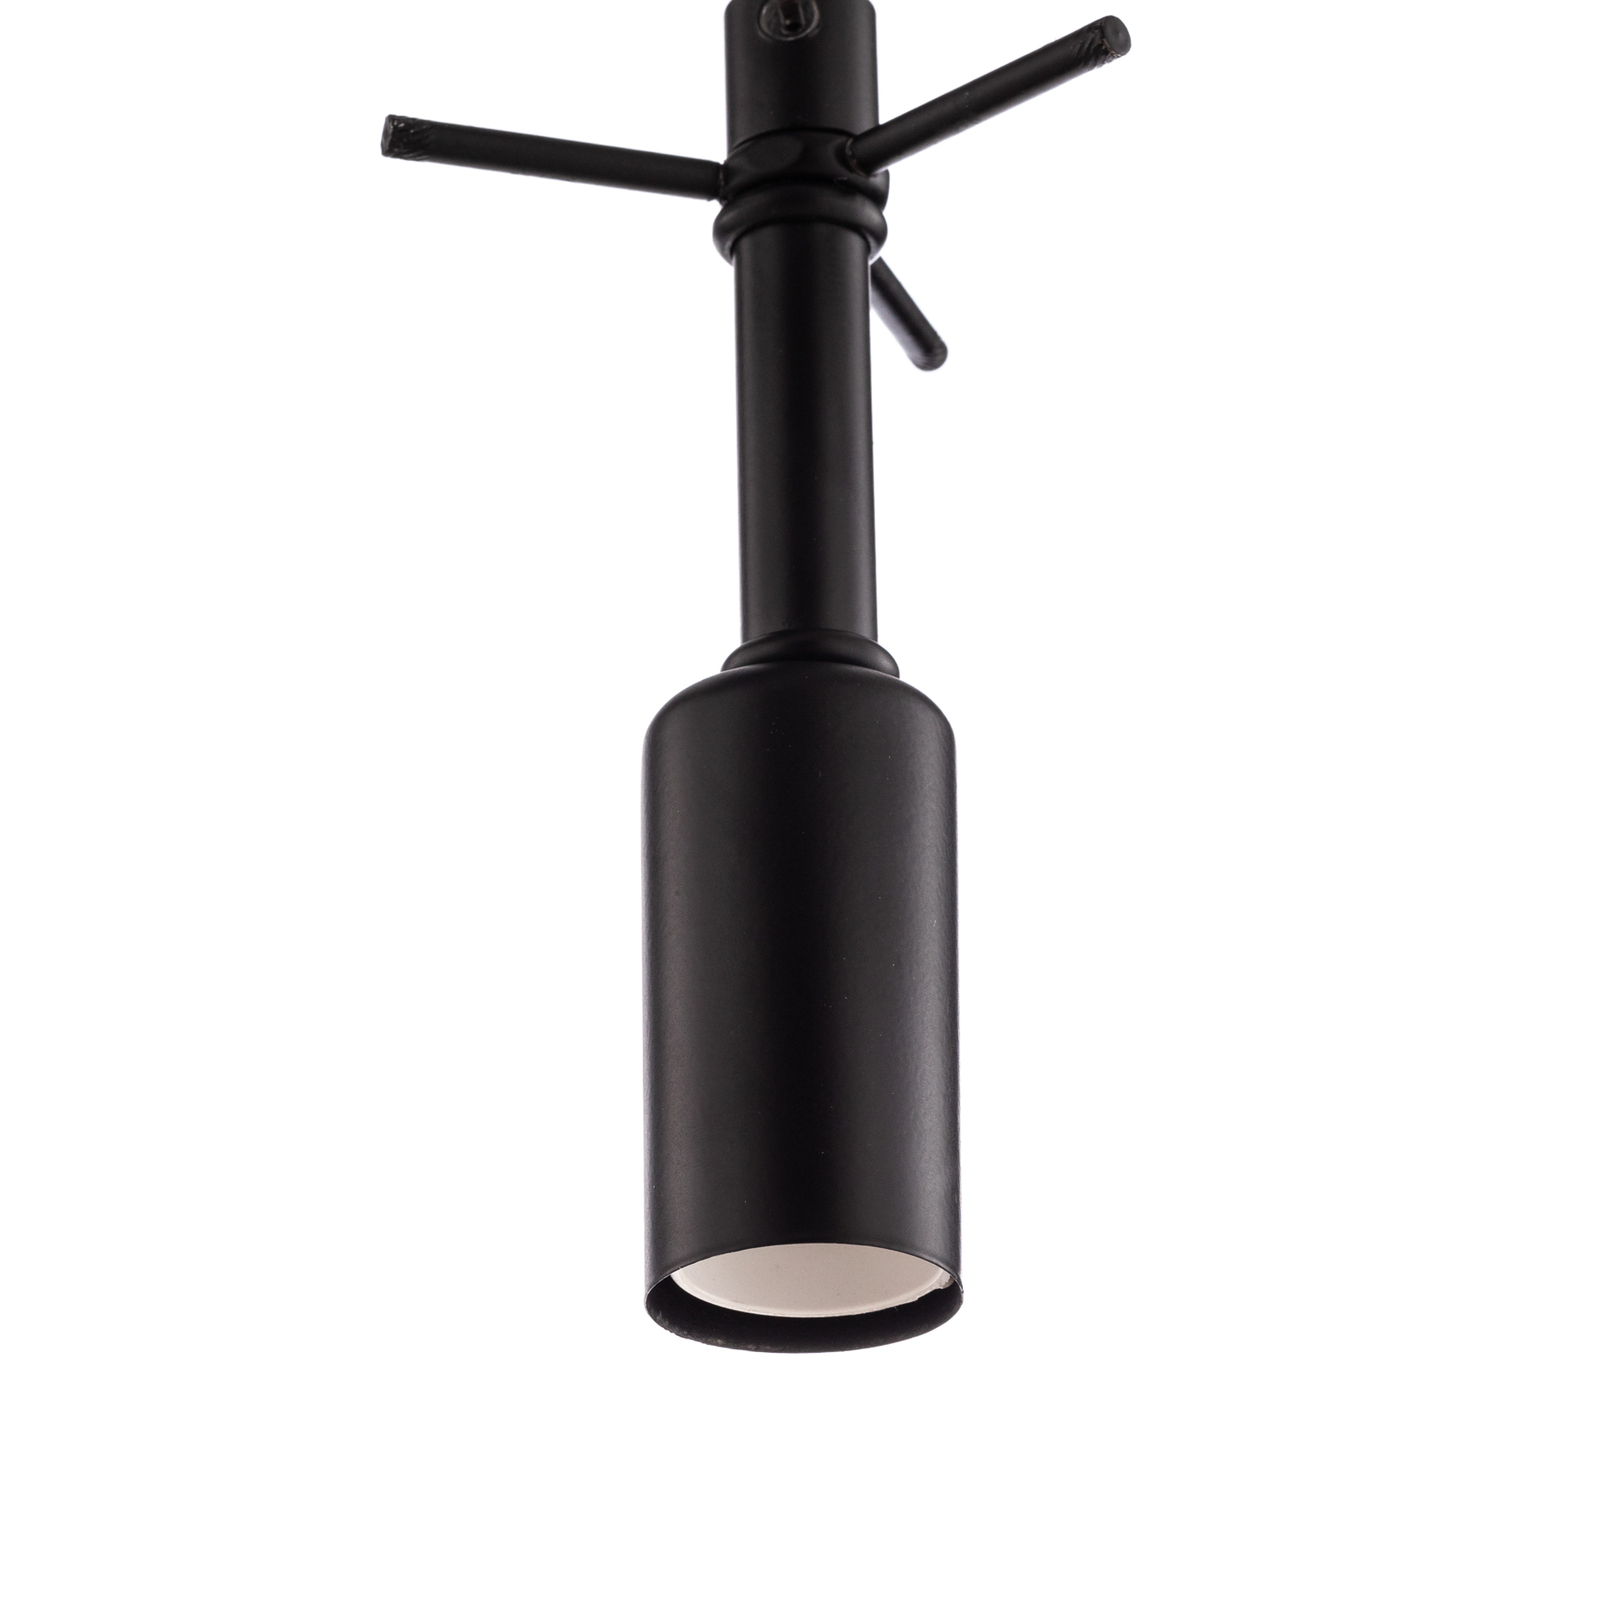 Hanglamp AV-7002-1697-9T-BSY in ronde vorm